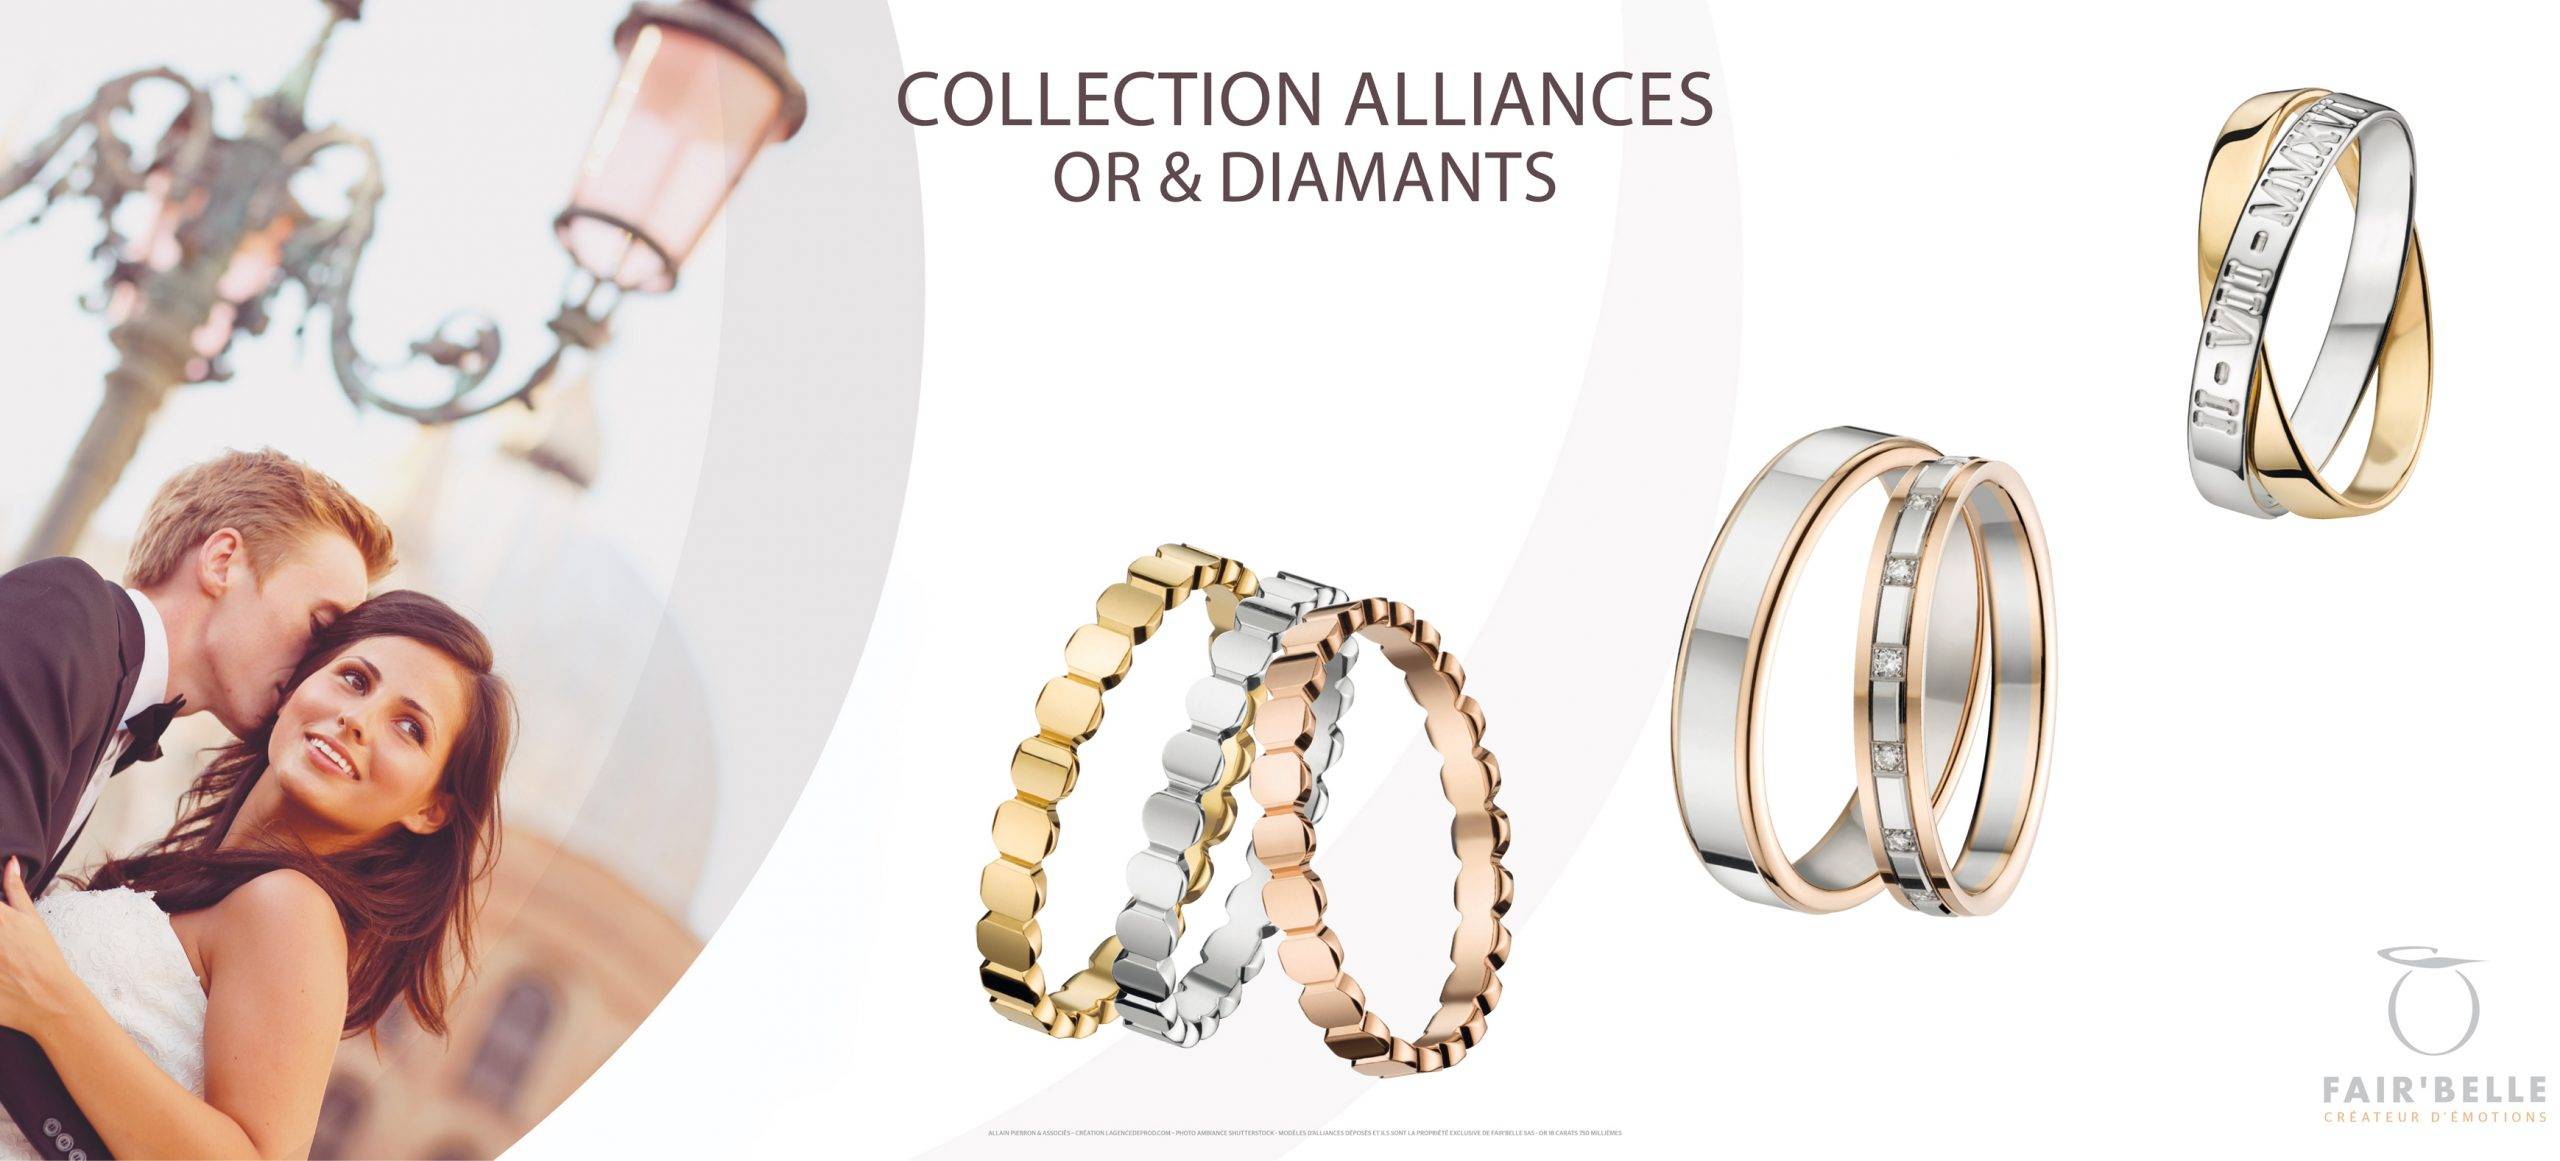 Alliance diamants or 750 Platine Fair belle fabrication francaise